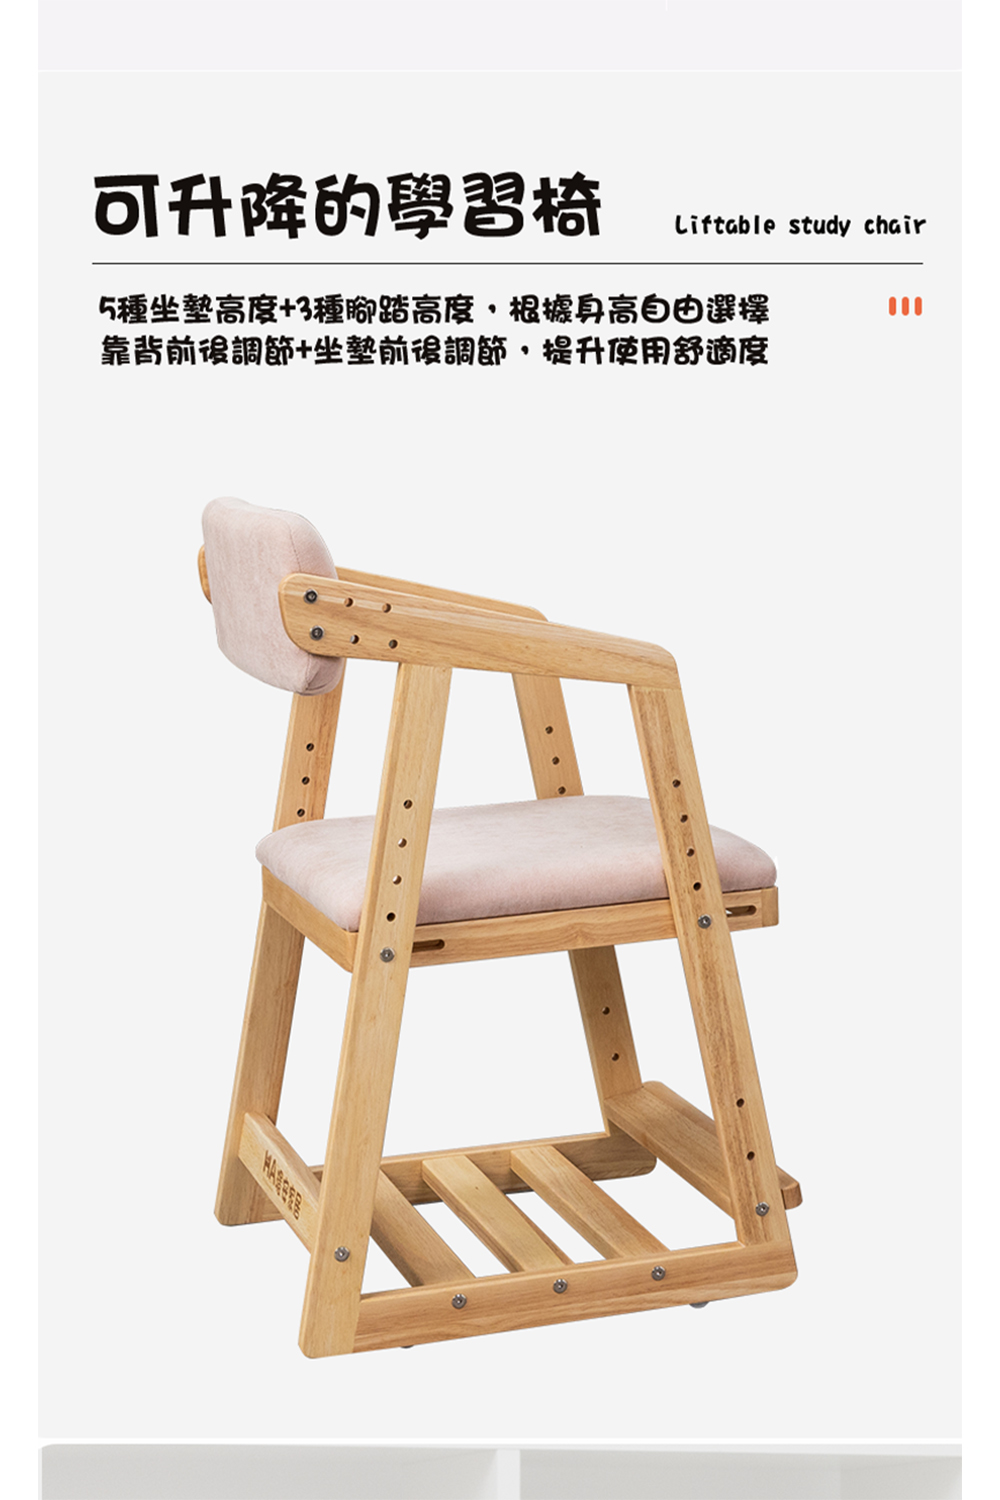 可升降的學習椅 5種坐墊高度3種腳踏高度,根據身高自由選擇 靠背前後調節坐墊前後調節,提升使用舒適度 